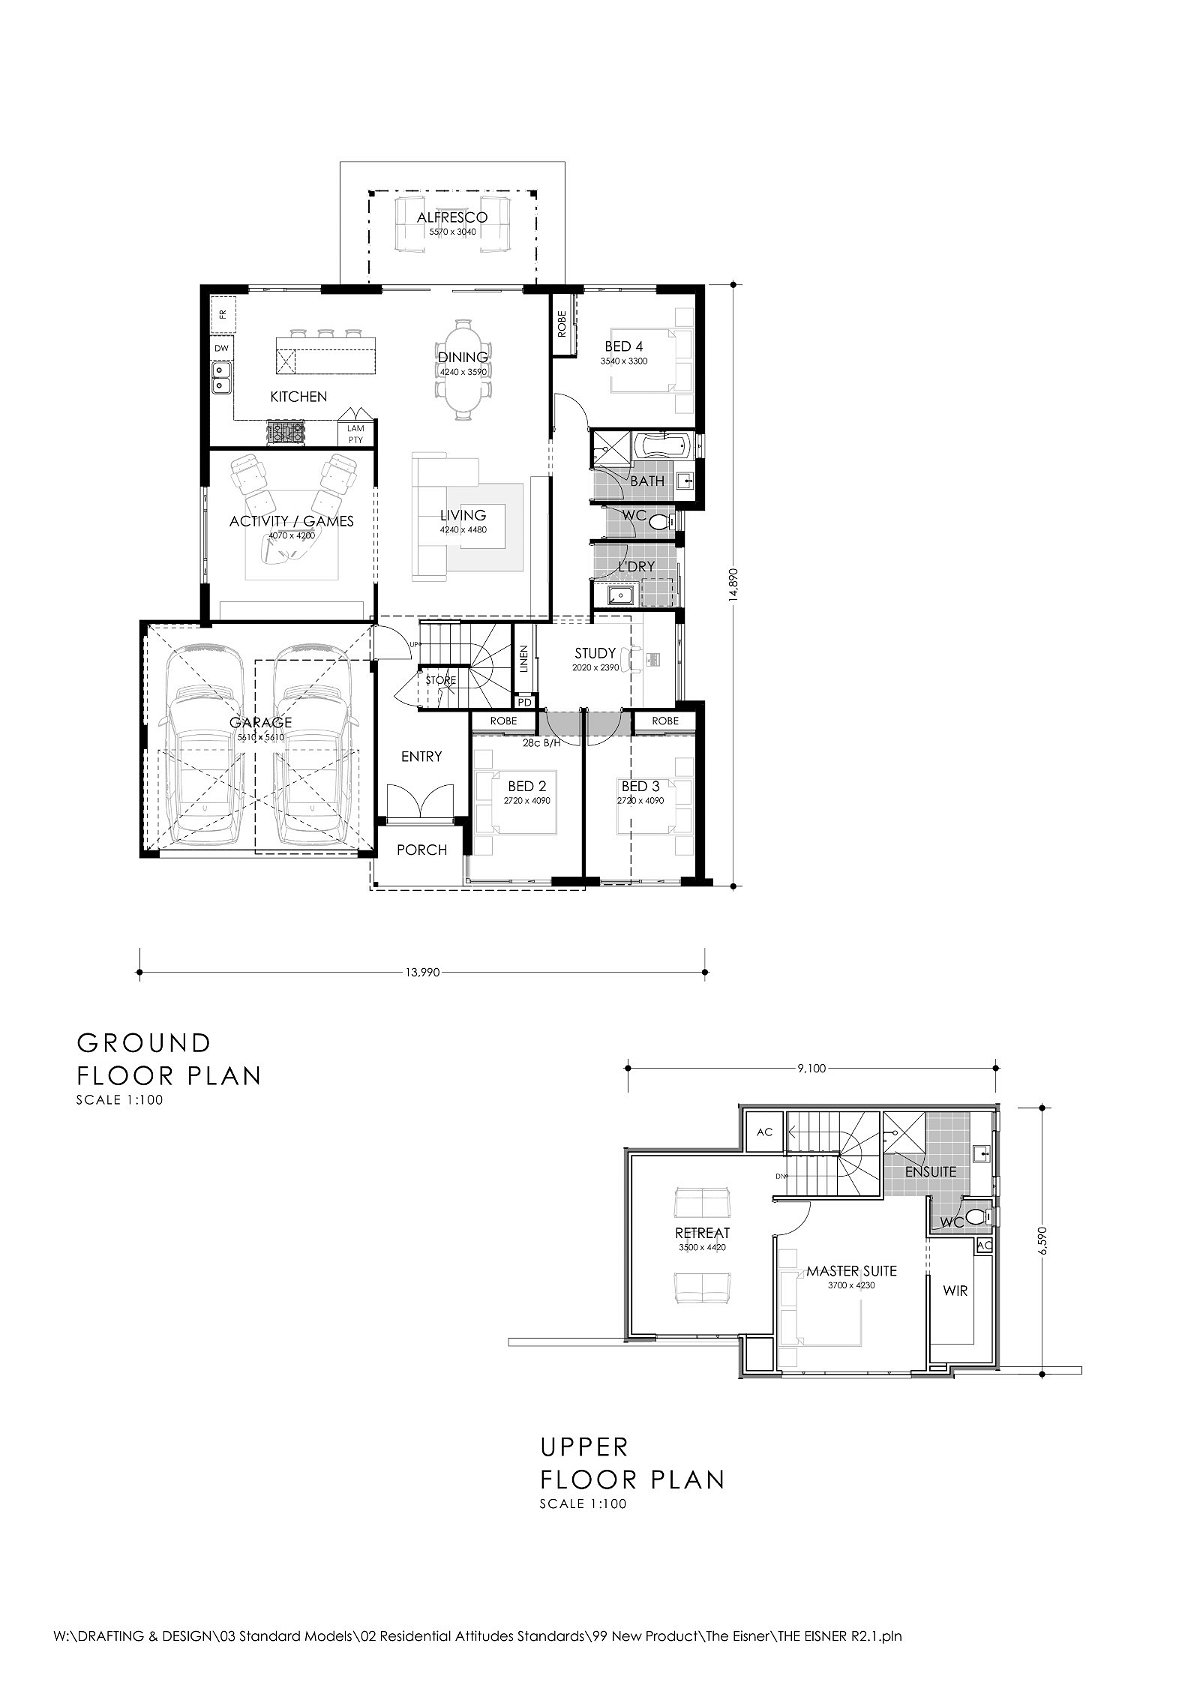 Residential Attitudes - Modern Family - Floorplan - Modern Family Brochure Plan